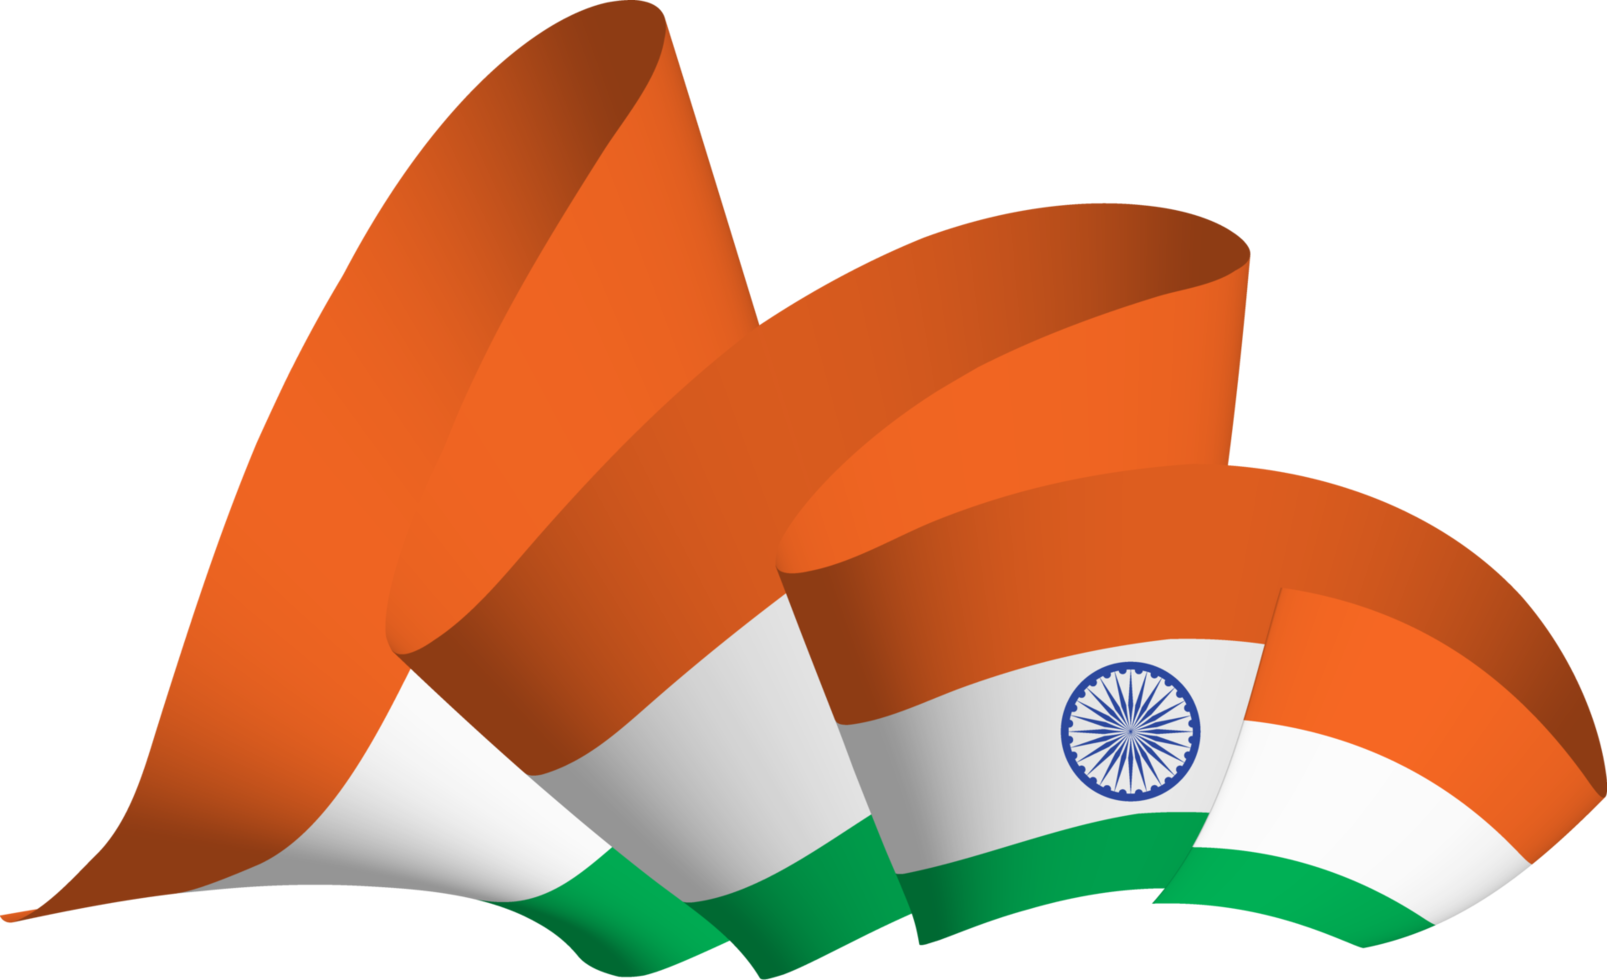 Hãy tải về miễn phí hình ảnh cờ Ấn Độ đẹp nhất trên trang web của chúng tôi và khám phá vẻ đẹp của nó. Cờ sẽ trở thành món quà tuyệt vời cho bạn bè và người thân của bạn, đồng thời cũng là cách để biểu đạt lòng yêu nước và tôn trọng quốc kỳ của một trong những quốc gia đa dạng về văn hóa nhất thế giới.